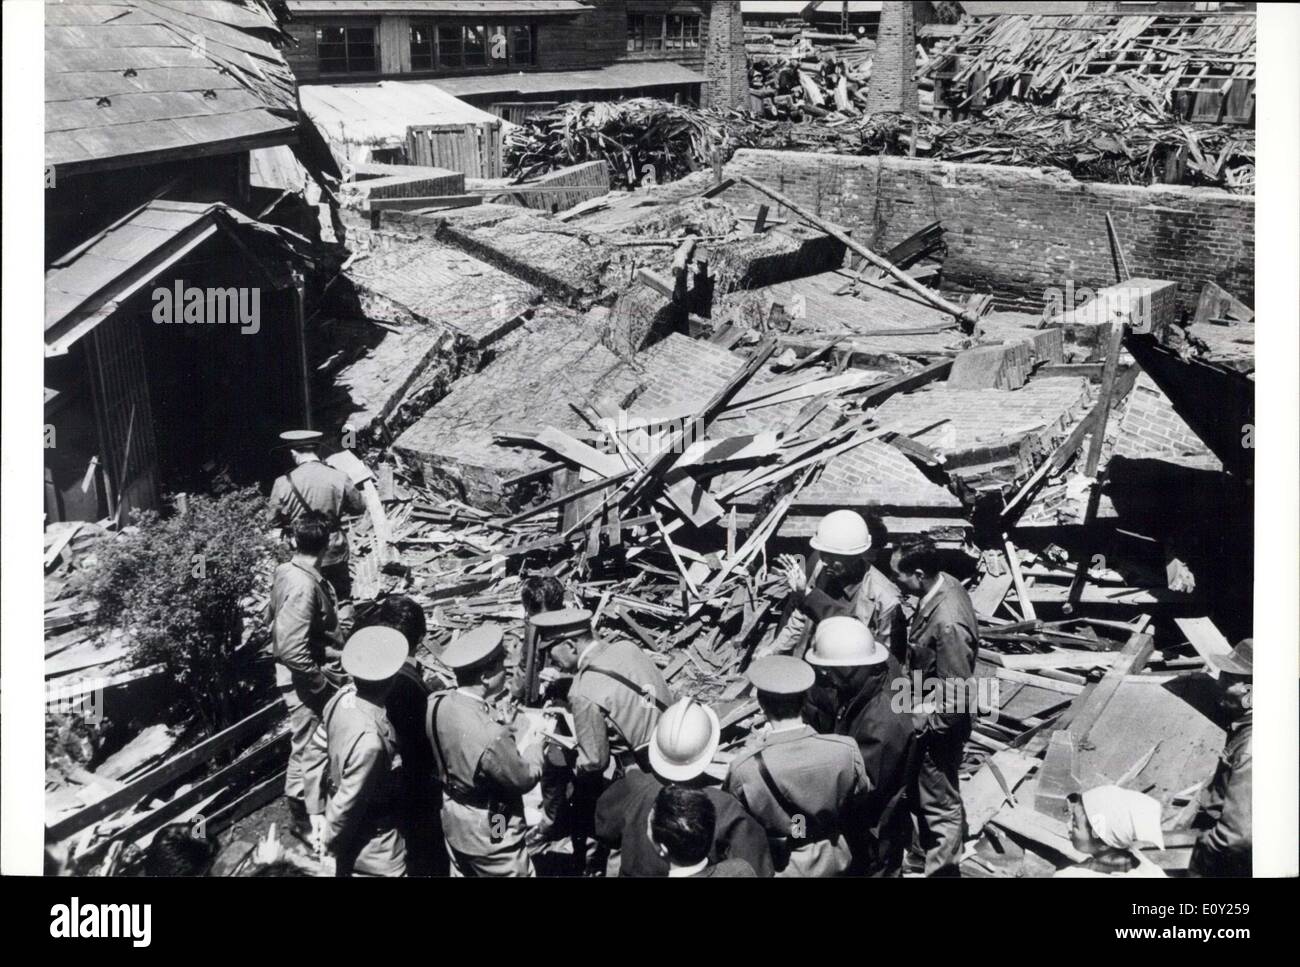 17. Mai 1968 - große Erdbeben Rock Nord Japan: Zwei schwere Erdbeben schlug ein ausgedehntes Gebiet im Norden Japans am Freitag, 17. Mai 1968, 38 Menschen getötet, viele verletzt und 800 Gebäude zerstören. Brände und Flutwellen gefolgt fahren Schiffe auf den Felsen, und versinken viele Fischerboote. Es war das schwerste Erdbeben seit dem Karfreitag Erdbeben in Alaska 1964. Der Norden Japans Erdbeben registriert 7,8 auf der Richterskala knapp 7,9 die Tokyo und Yokohama 1923 100.000 Menschen töten eingeebnet Stockfoto